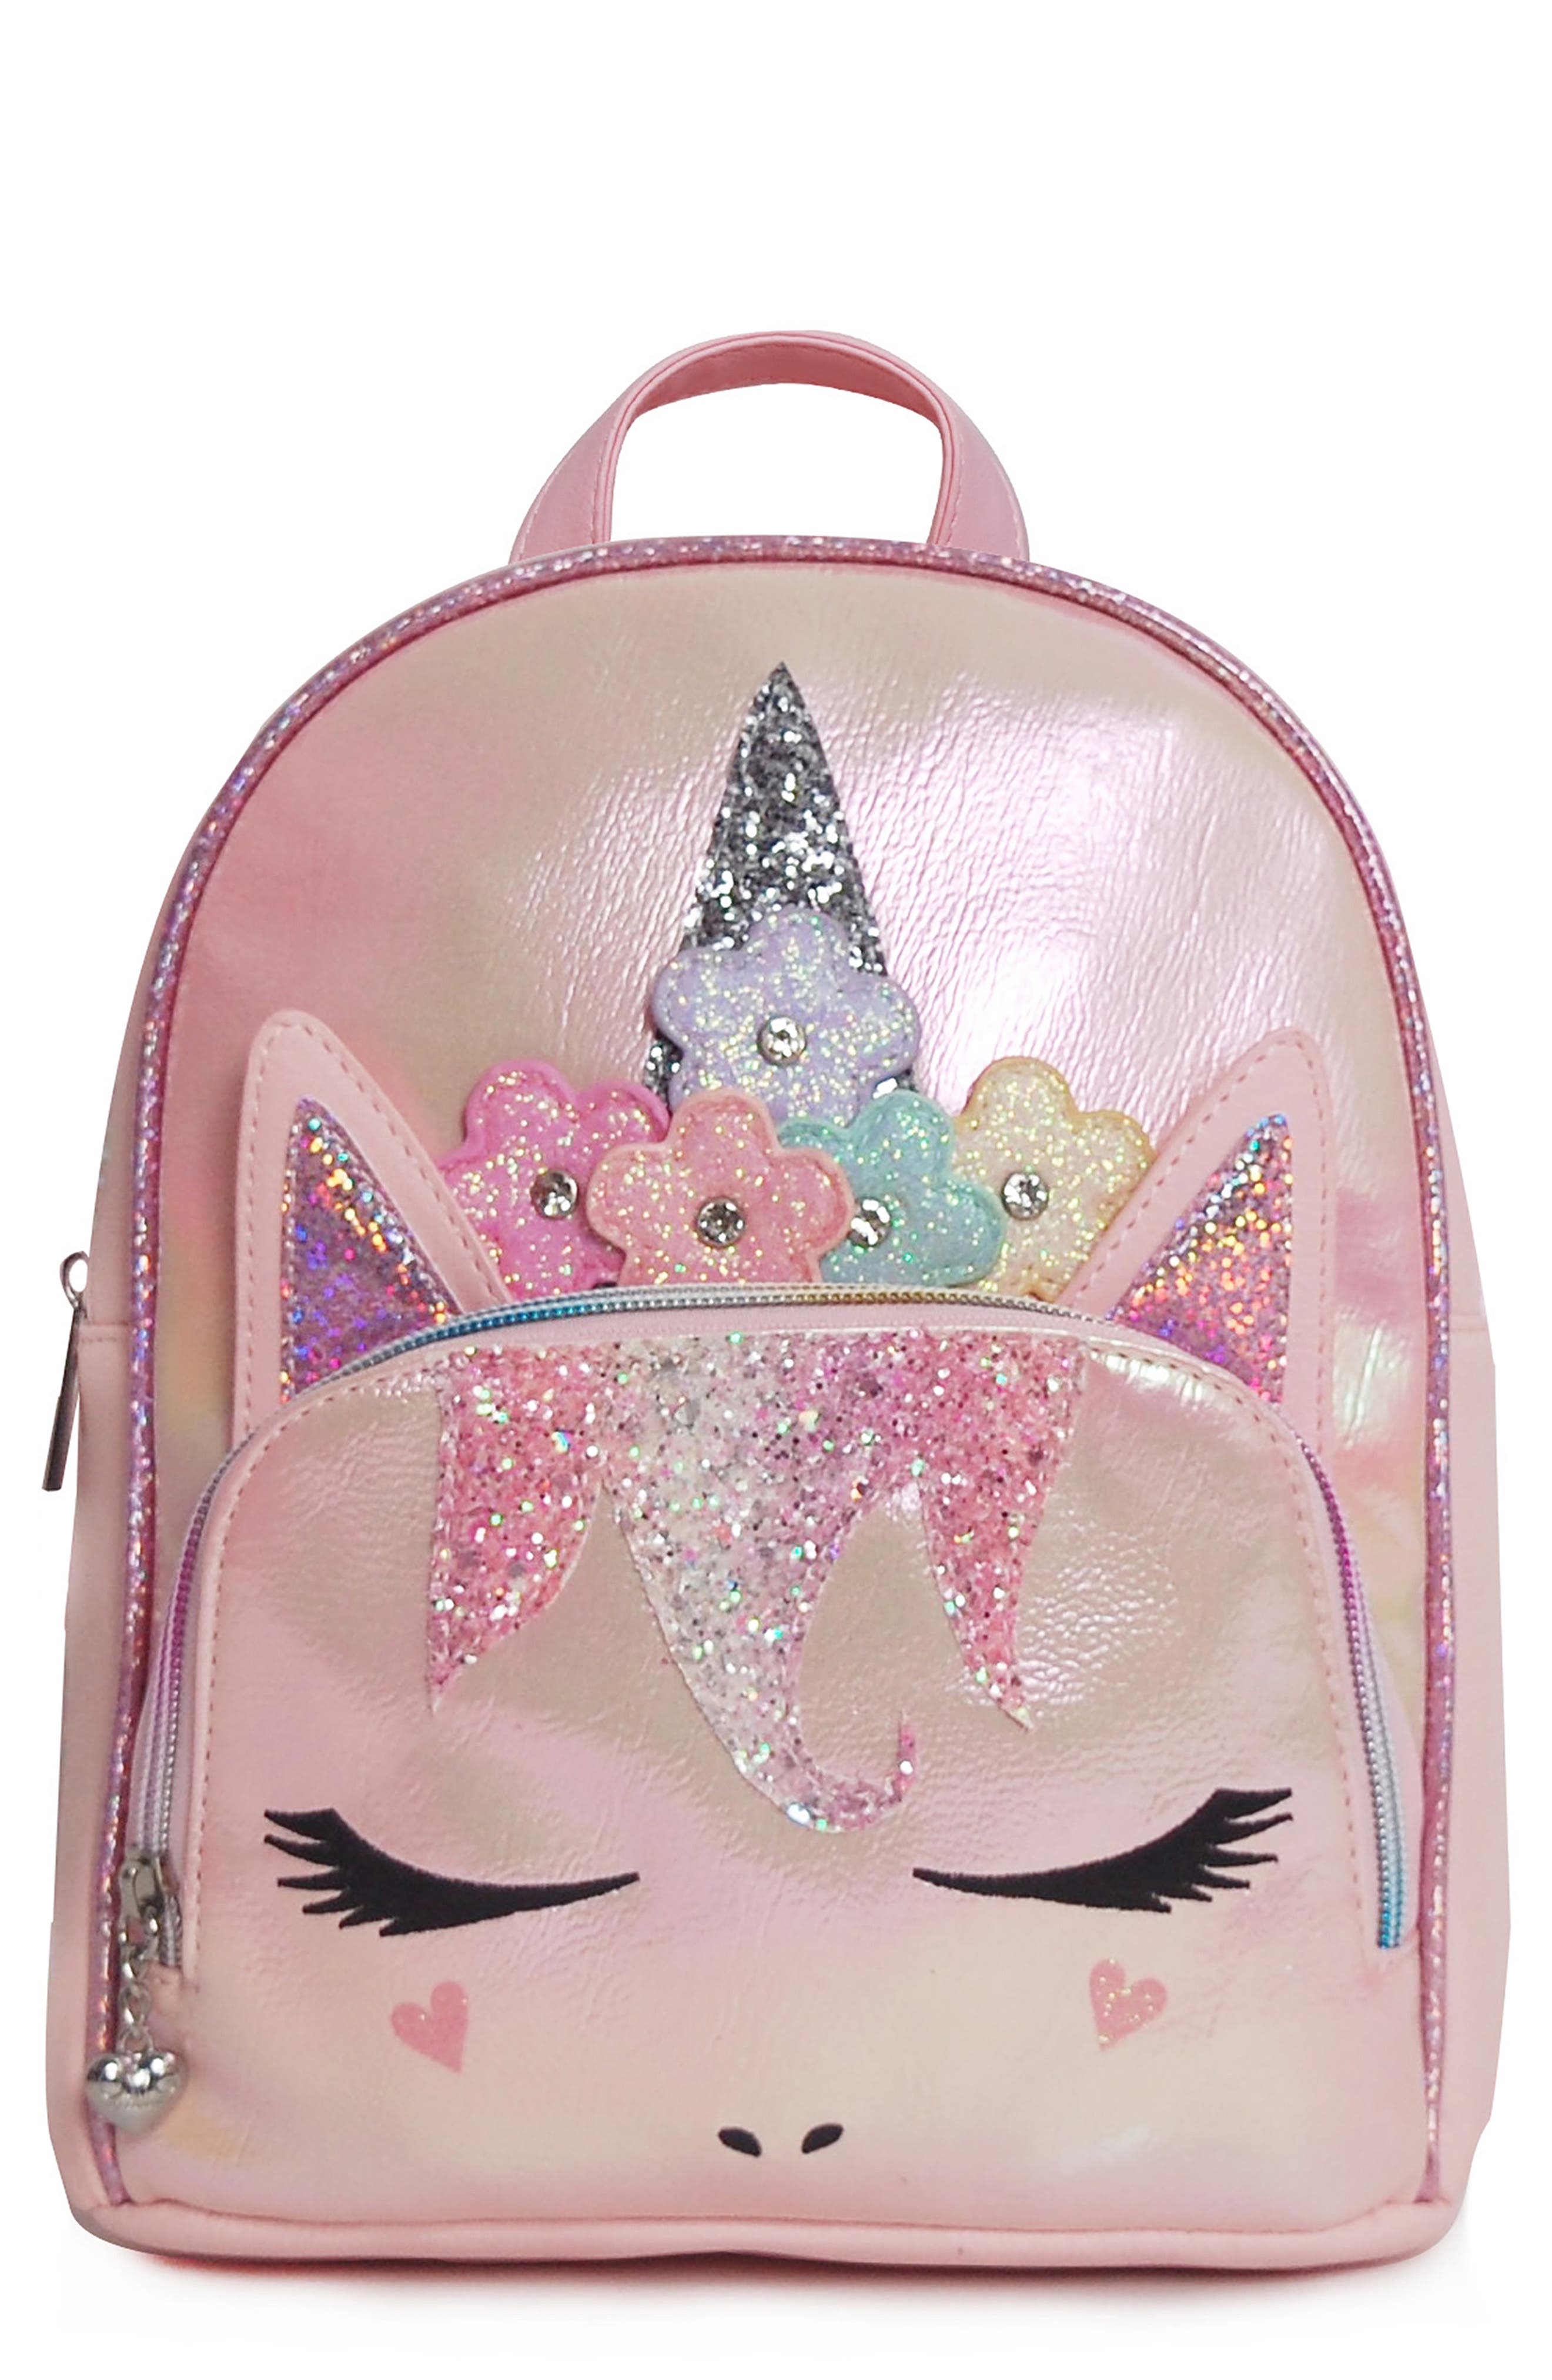 OMG Accessories Pink Mini Backpack Girls Unicorn Gwen Bag 